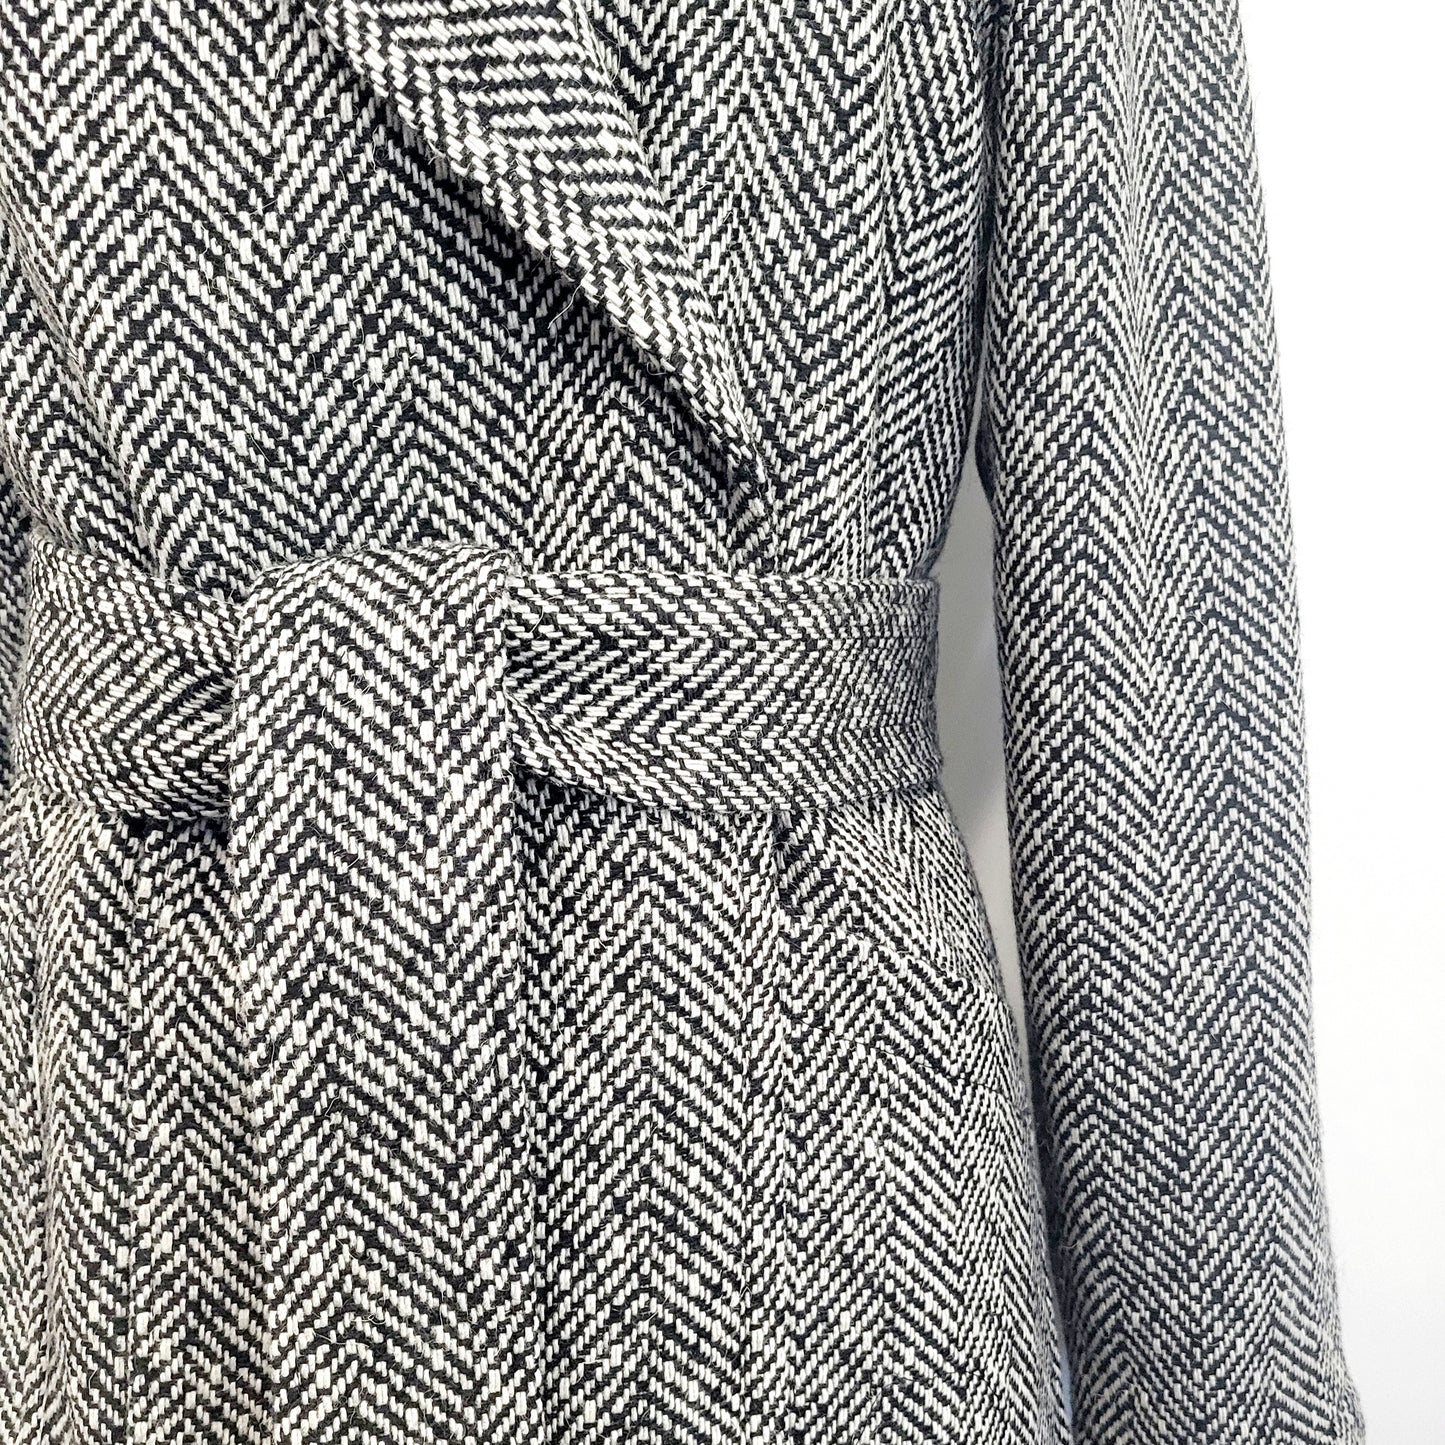 Manteau d'entre-saison en laine à motif chevrons noir et blanc